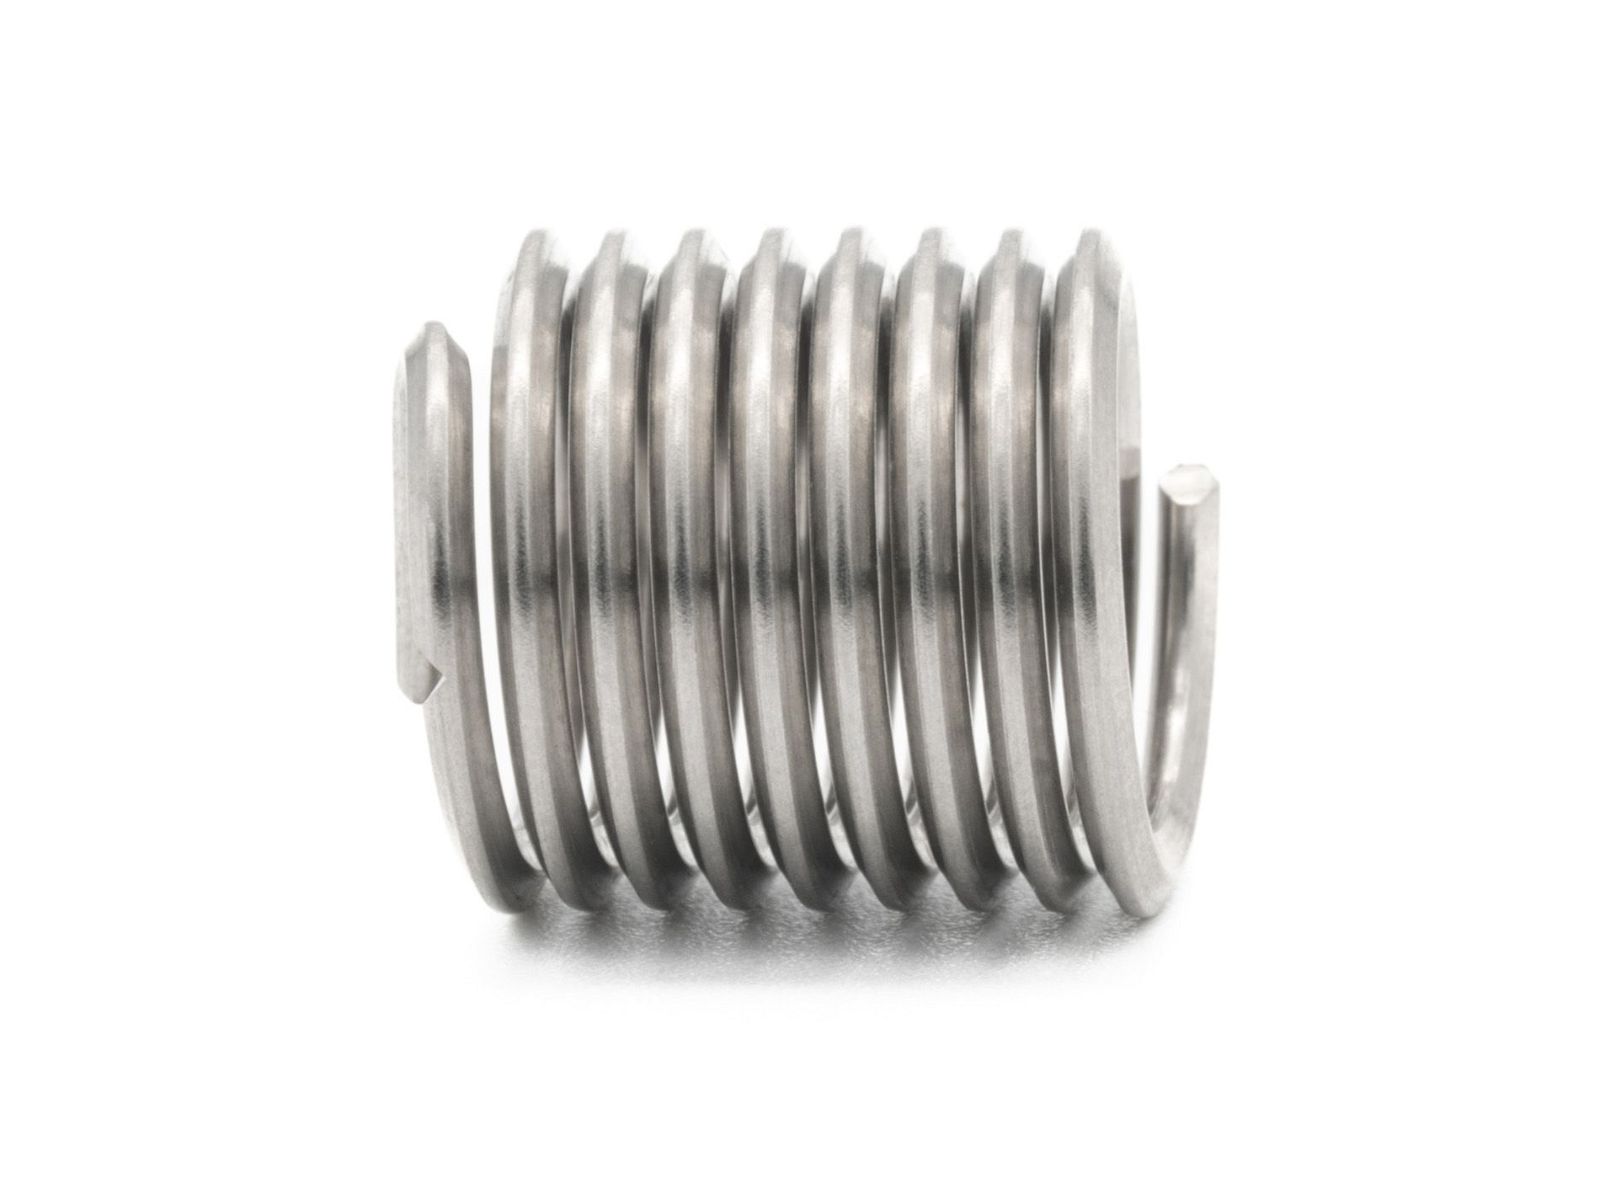 BaerCoil Wire Thread Inserts UNC 1“ x 8 - 1.5 D (38.1 mm) - free running - 10 pcs.